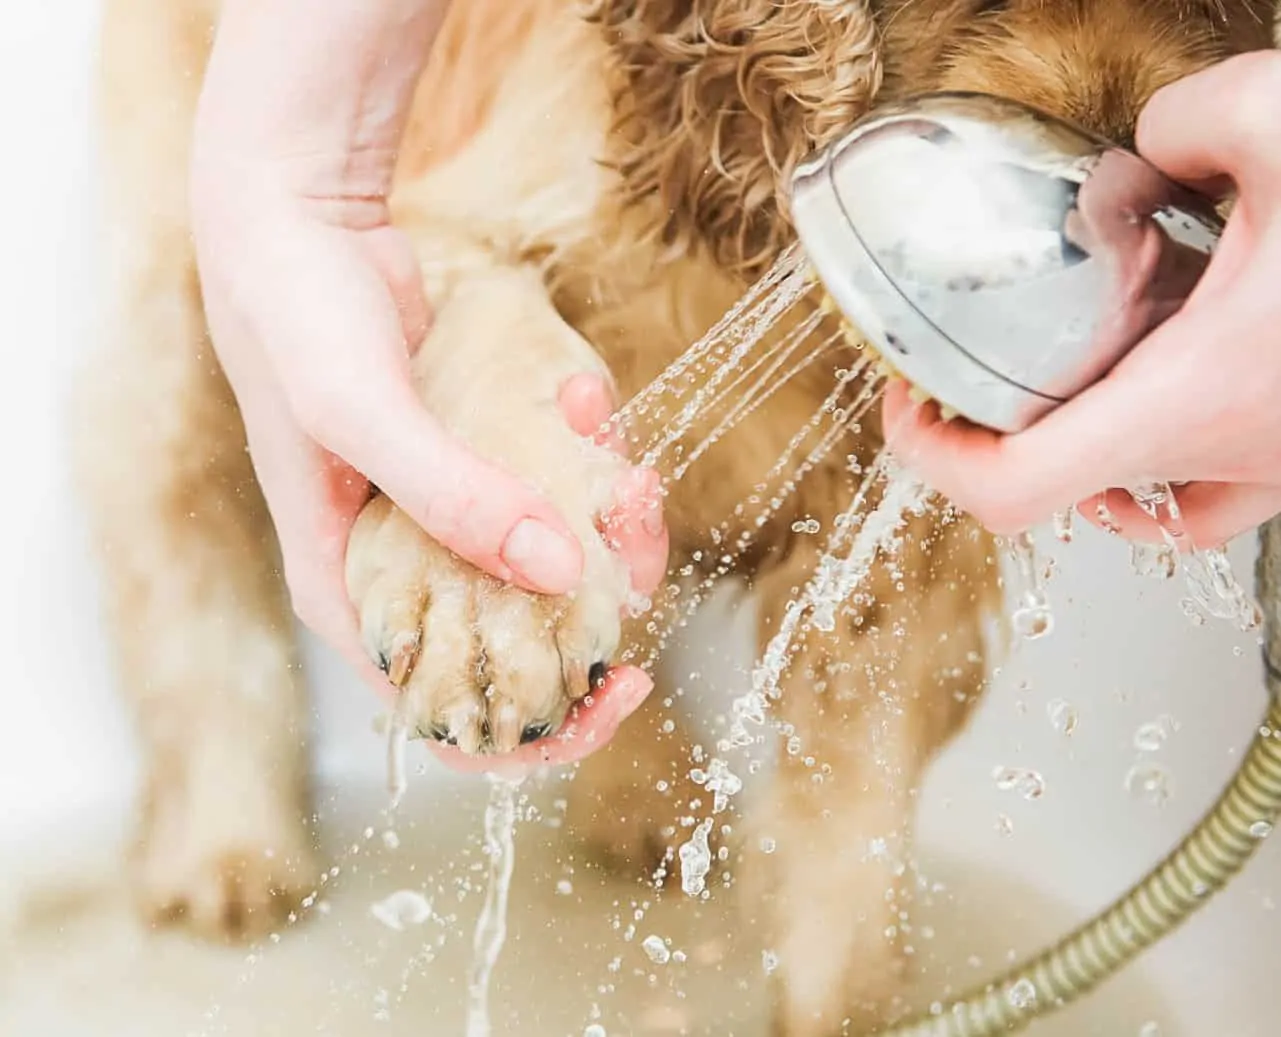  laver la patte du chien